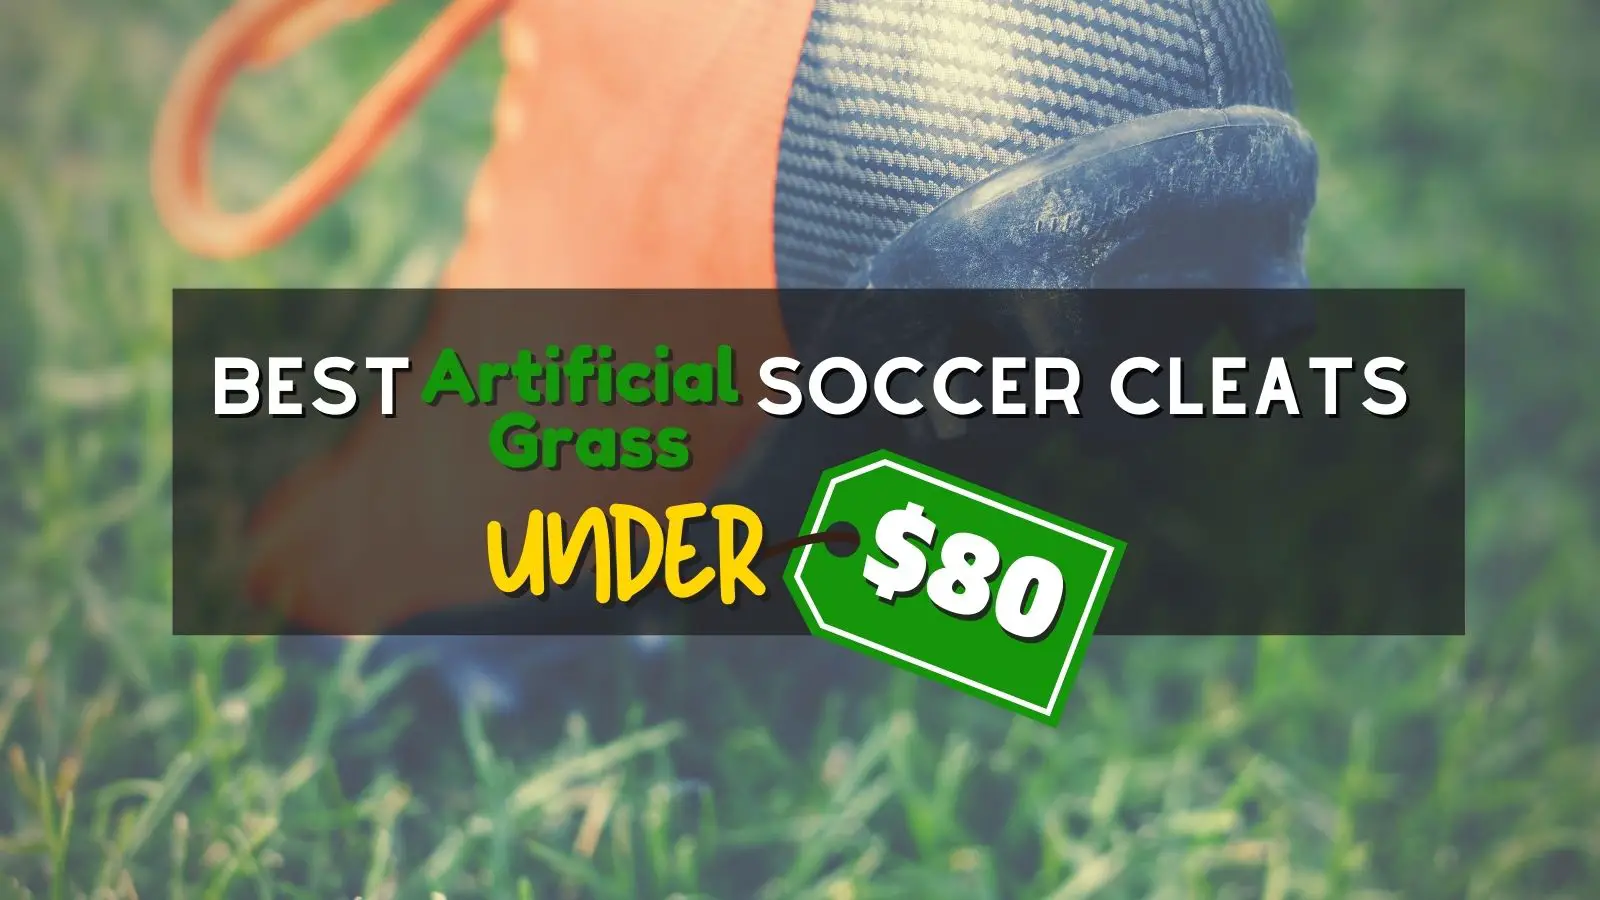 Best Artificial Grass (Turf) Soccer Cleats: Under $80